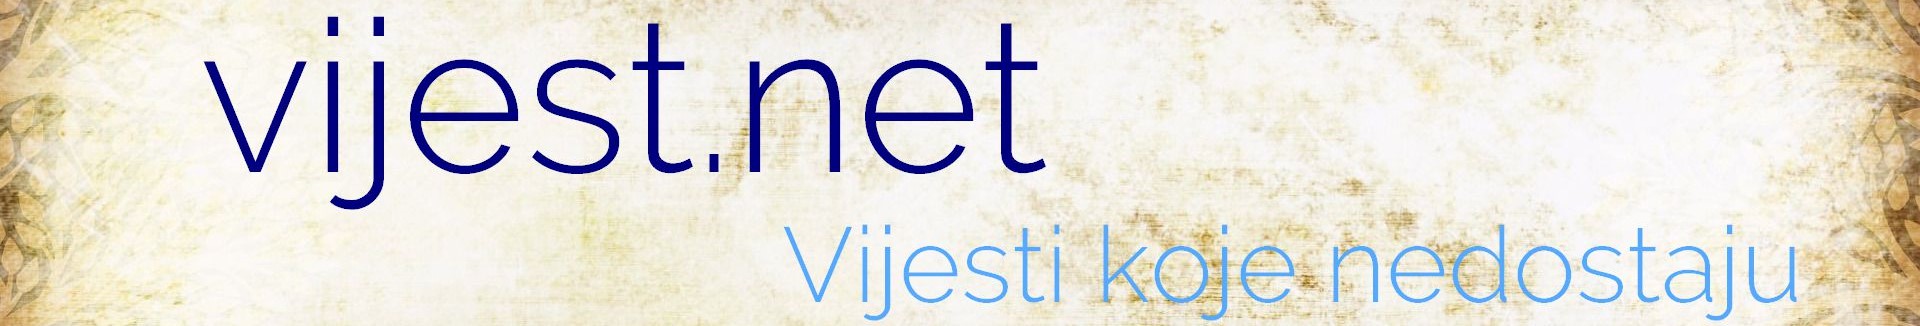 VIJEST.NET